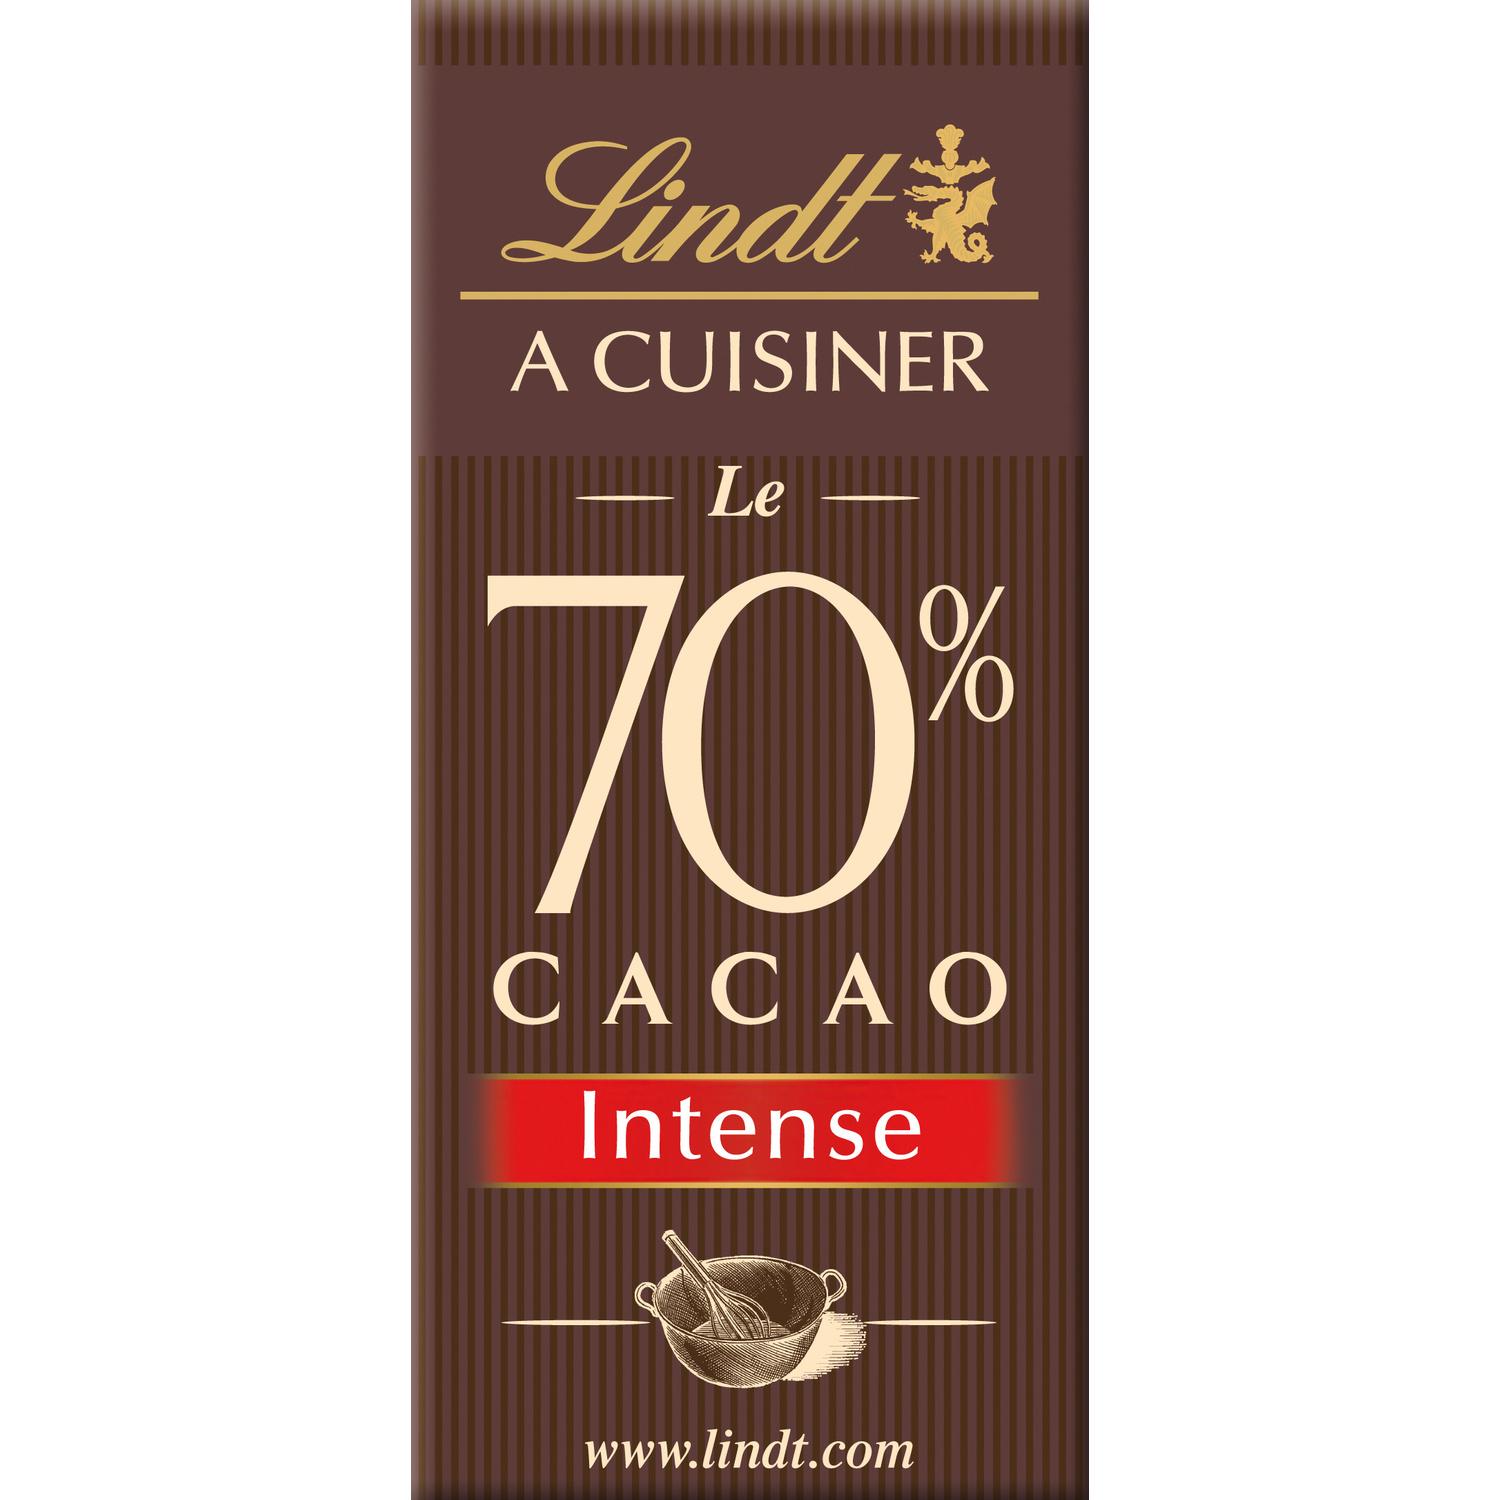 Le 70% Cacao Intense à cuisiner